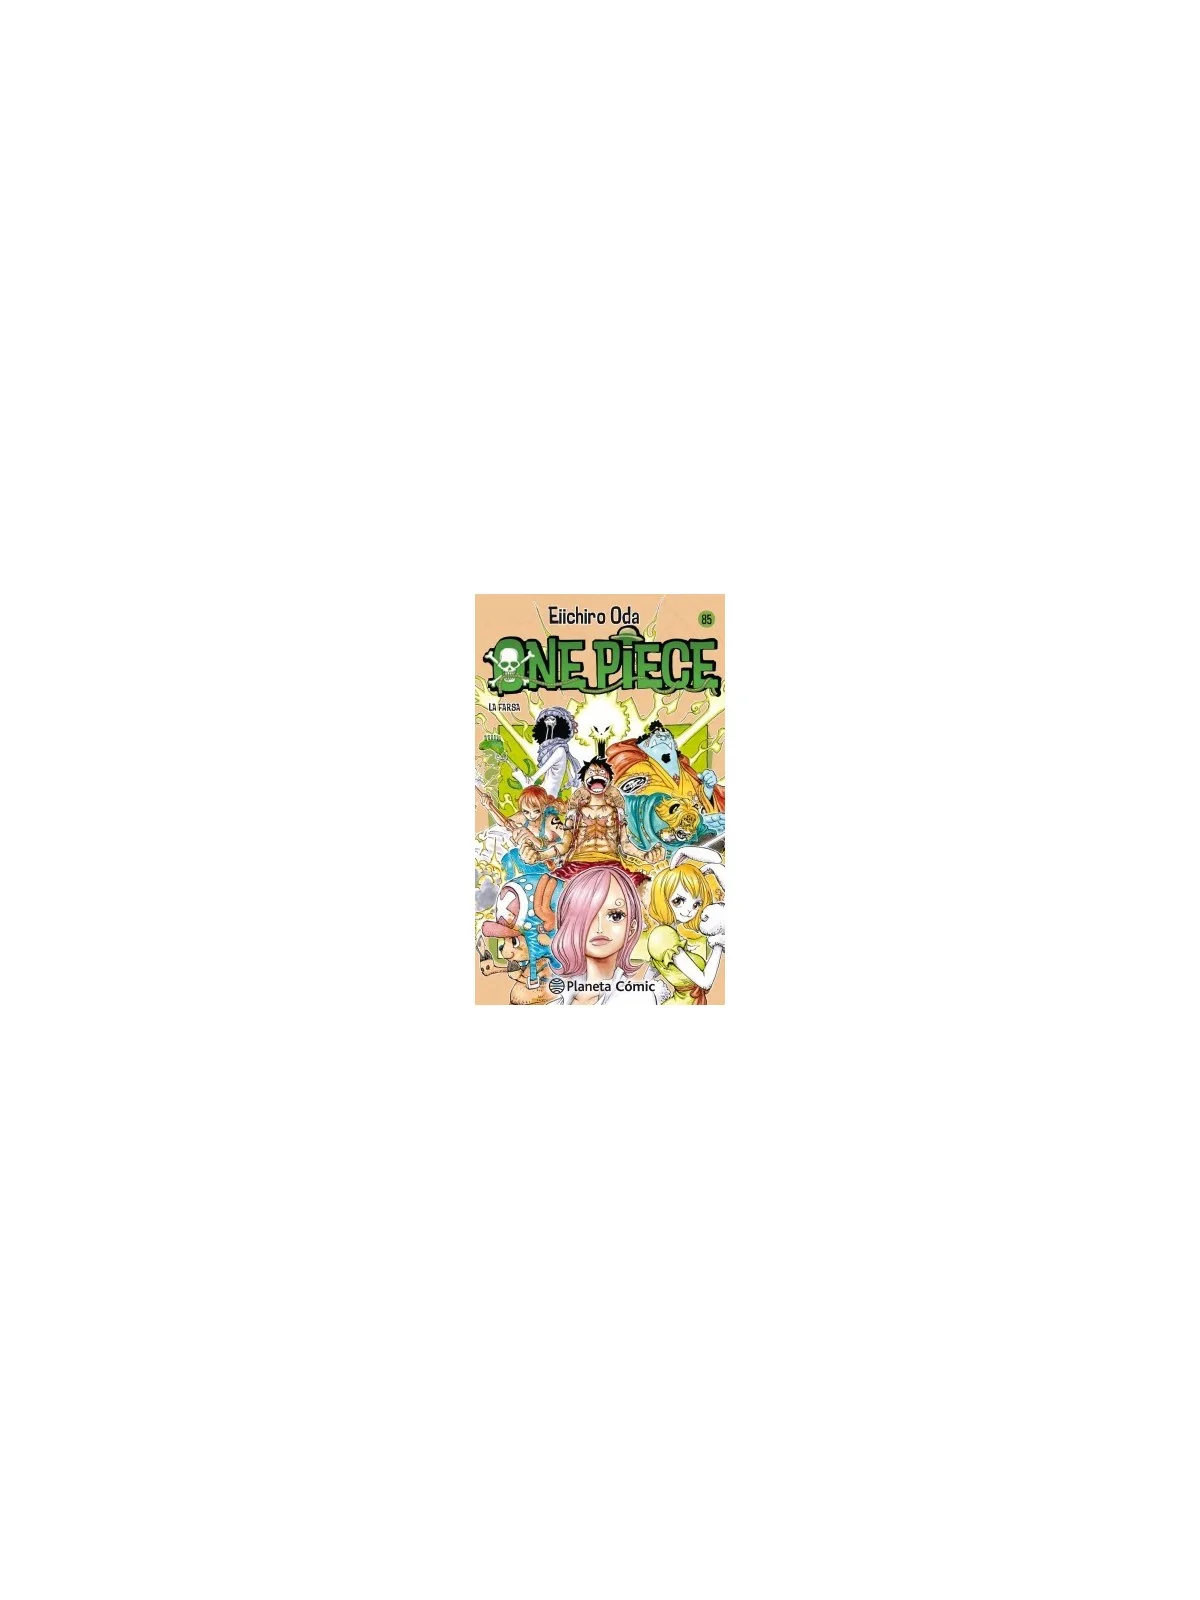 Comprar One Piece 085 barato al mejor precio 7,55 € de Planeta Comic